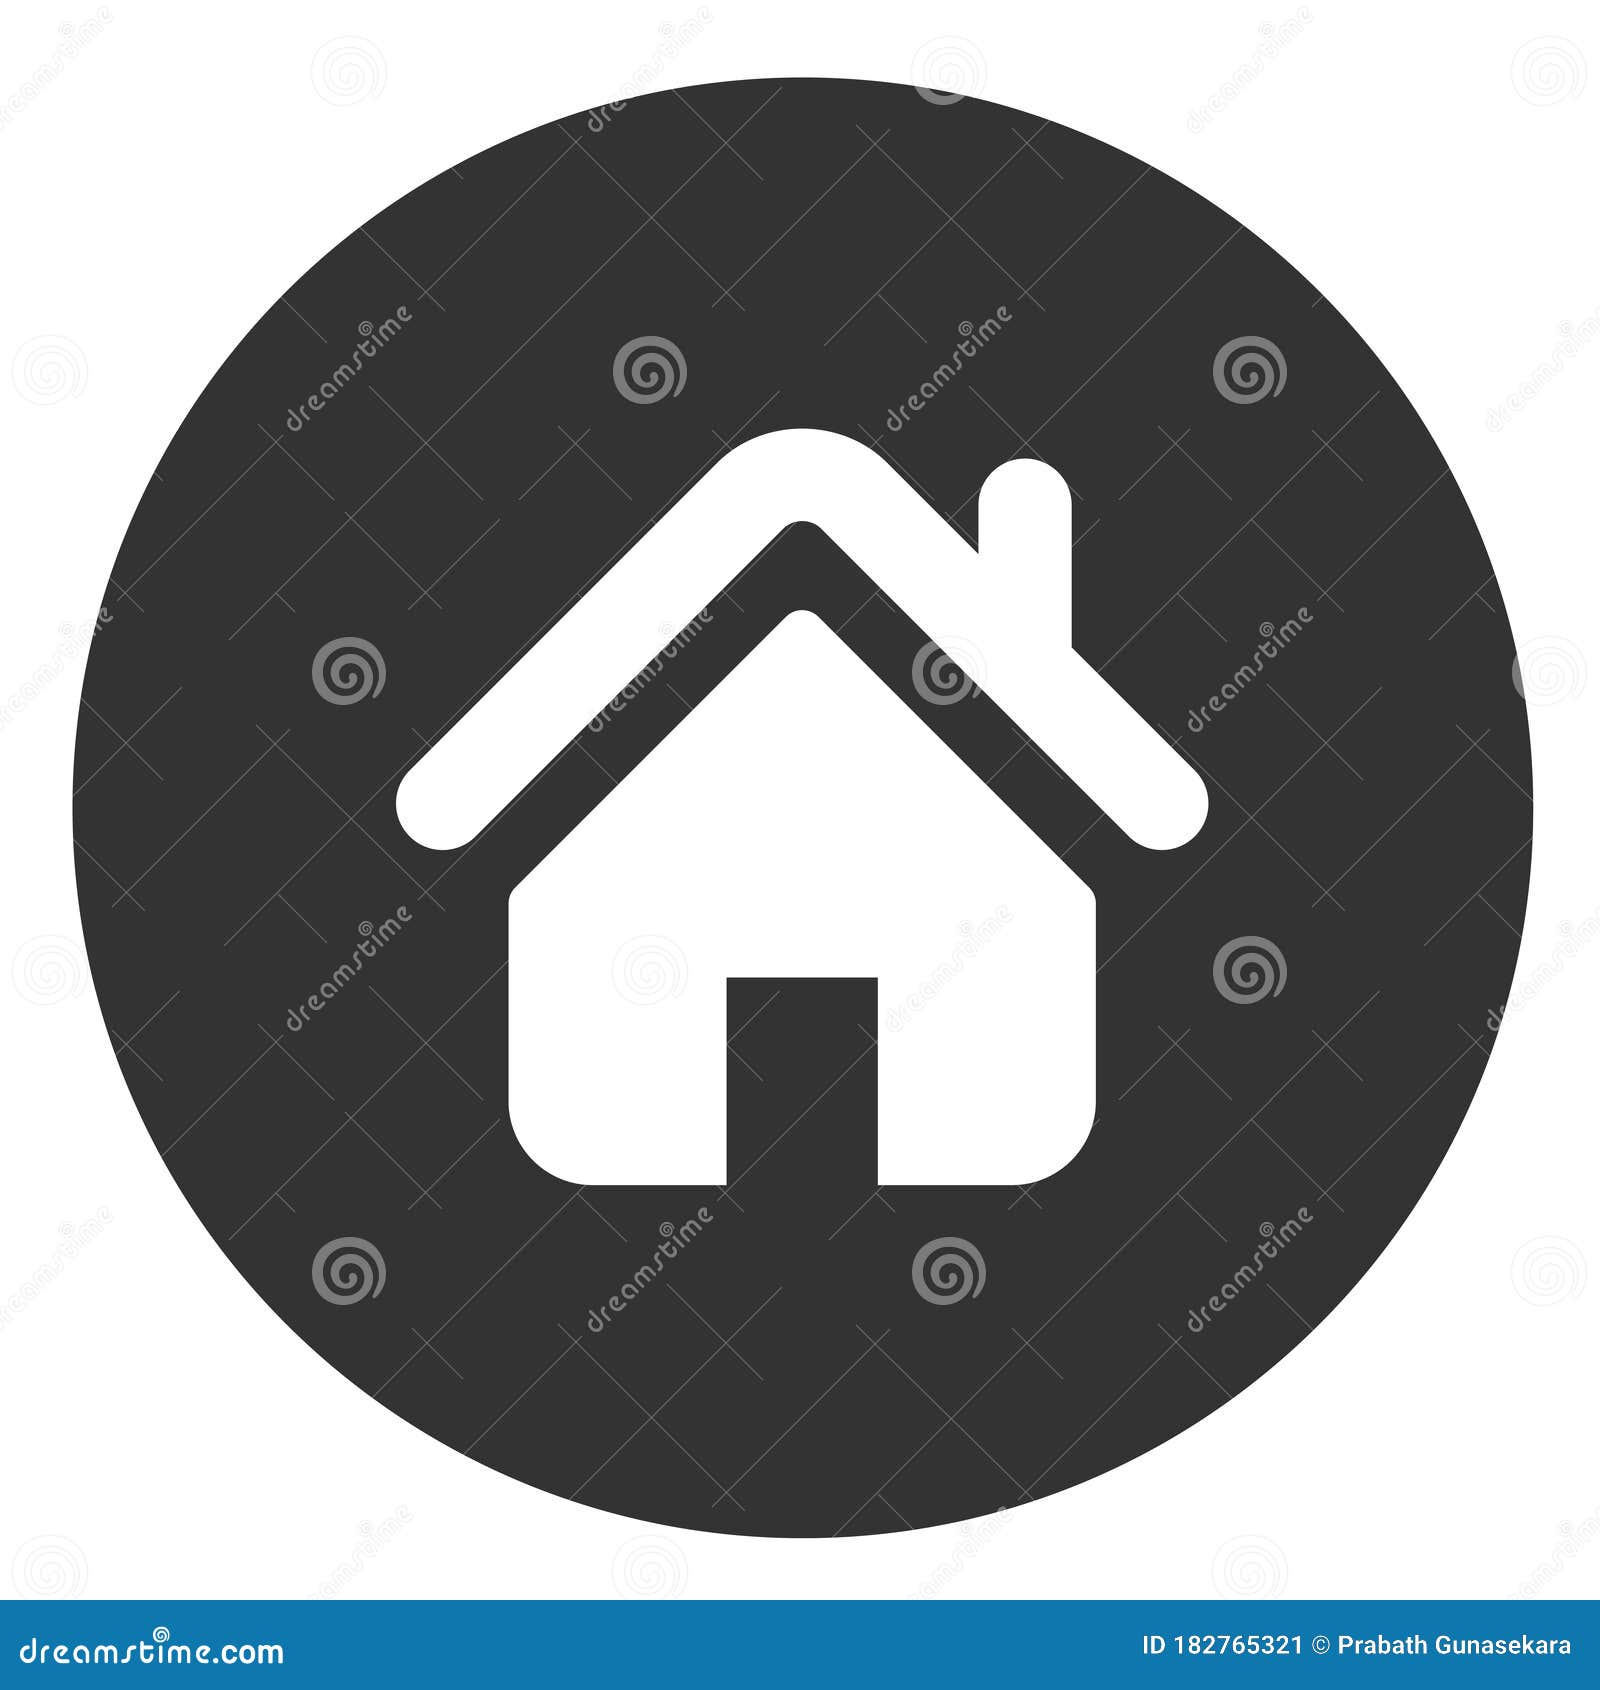 light black & white home icon for websites